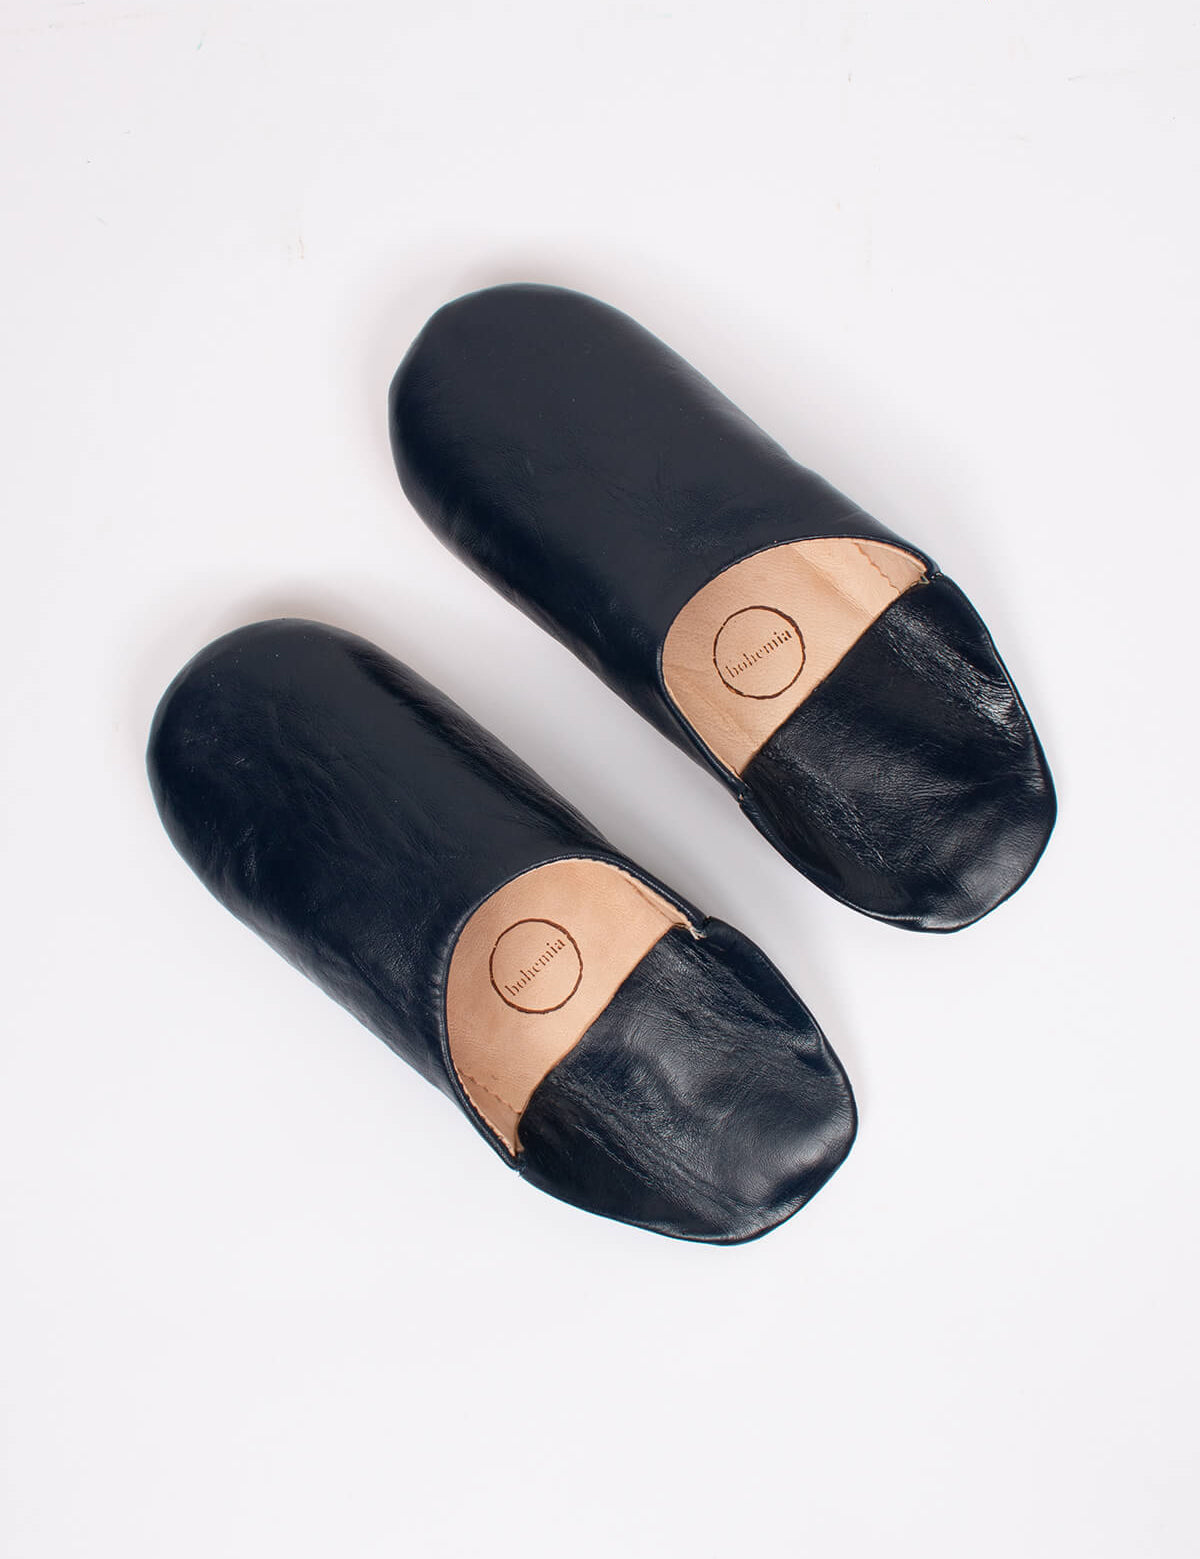 bohemia-design-moroccan-babouche-slippers-handmade-indigo_0214d303-590e-4537-8799-a50812ed68bd.jpg